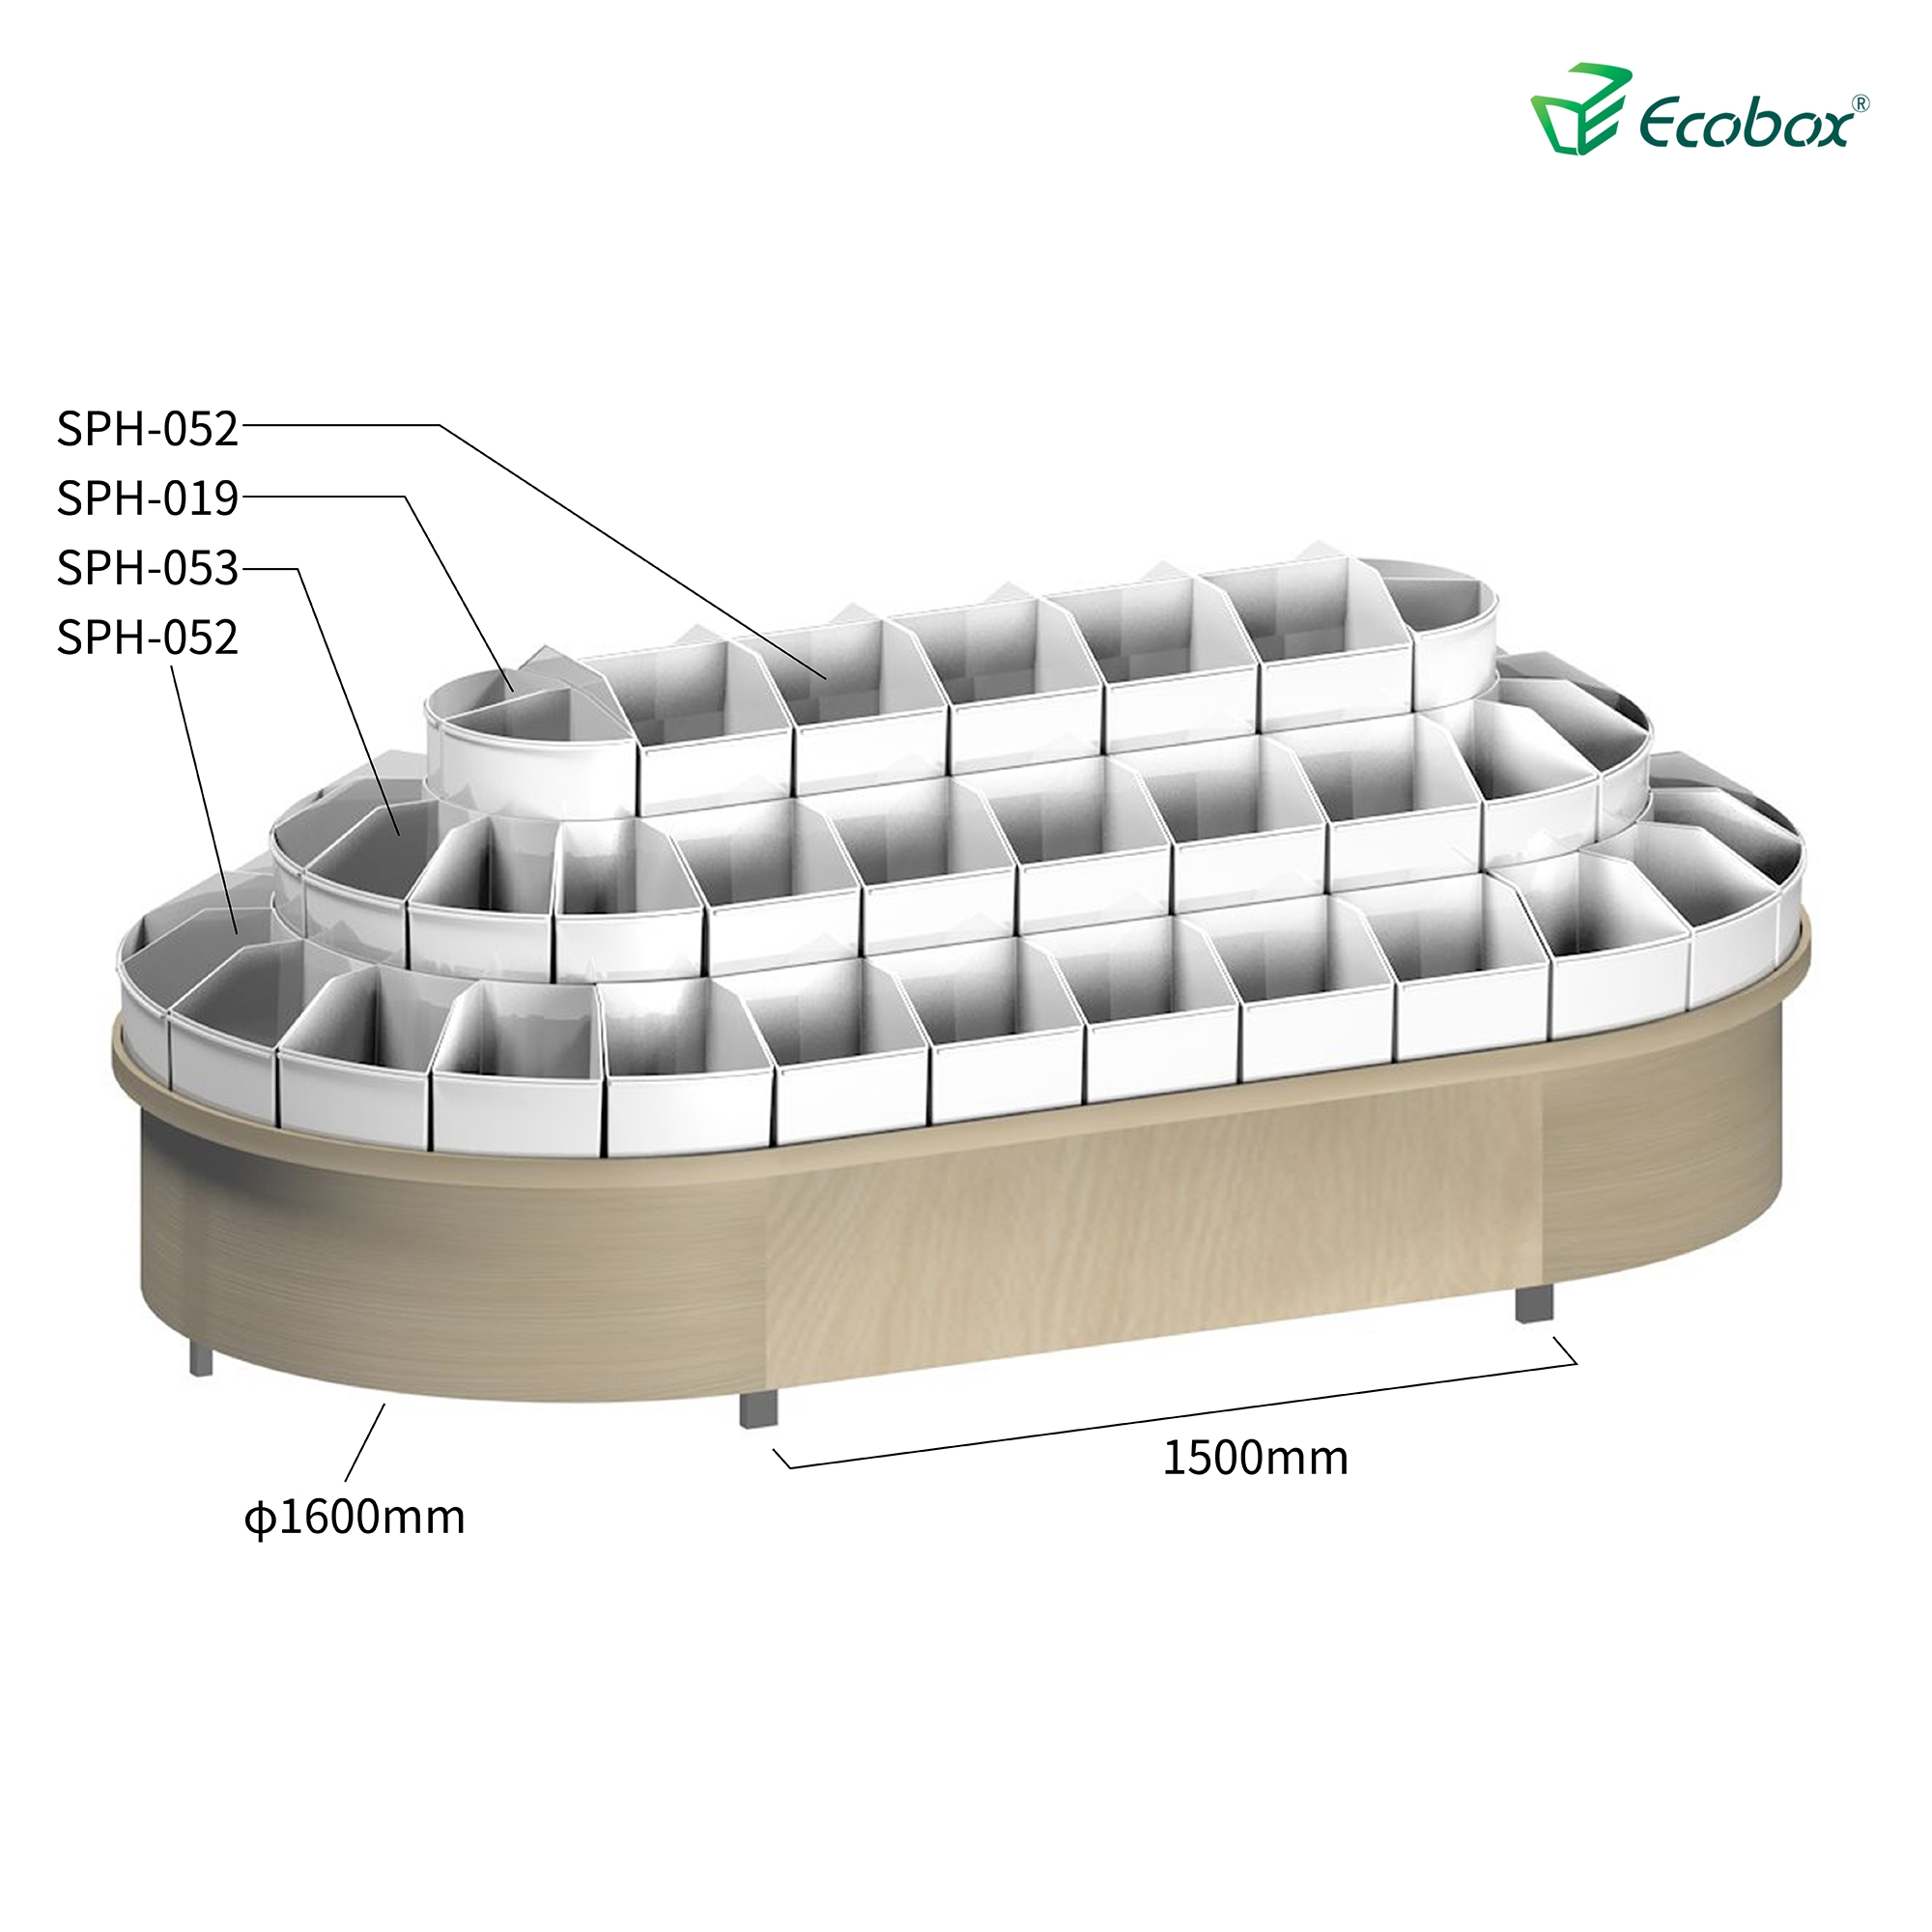 Rundes Regal der Ecobox G003-Serie mit Ecobox-Großbehältern für Supermärkte